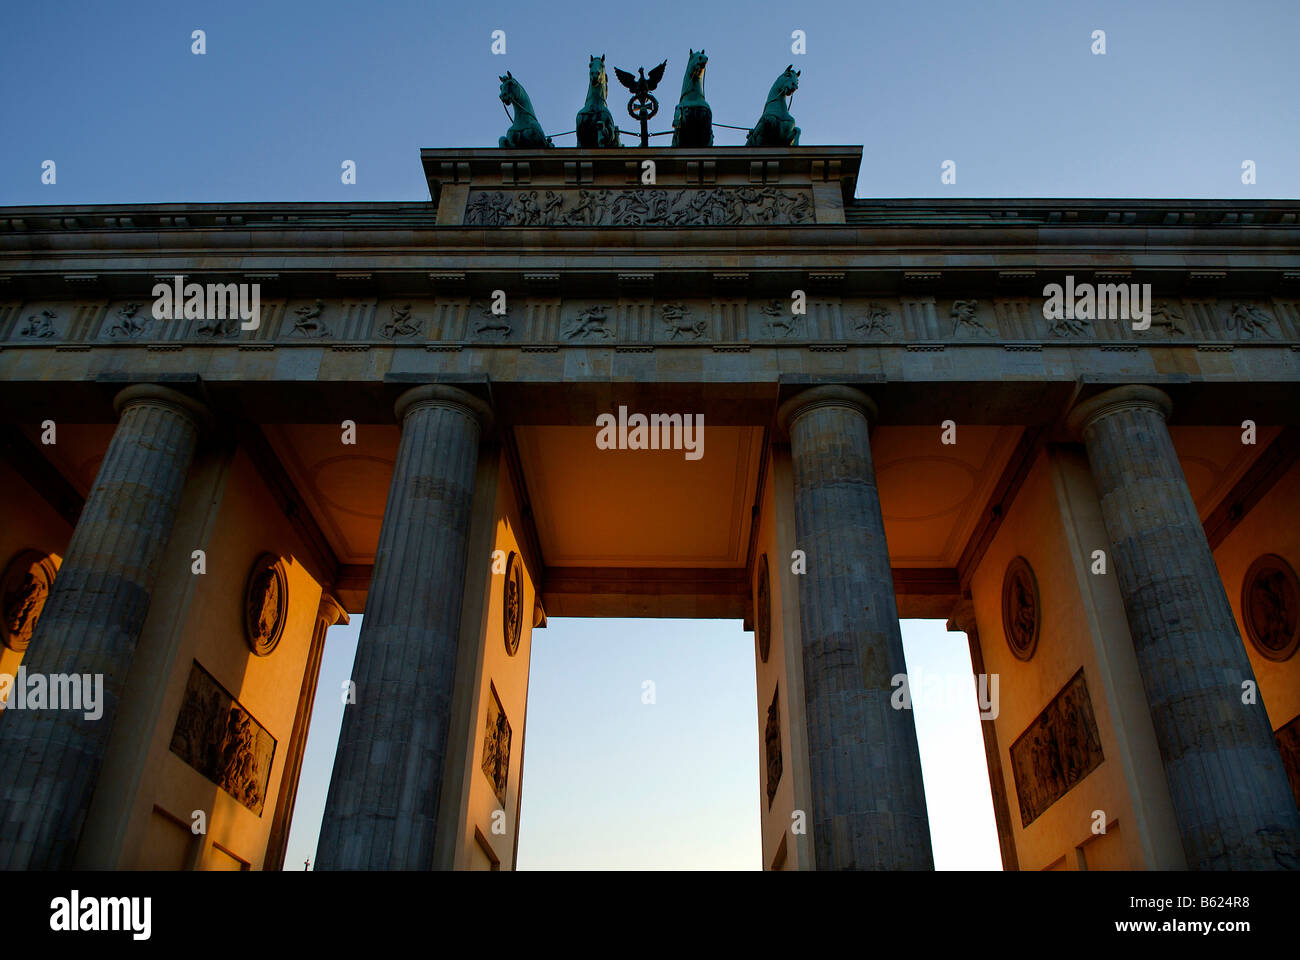 Vue détaillée de la porte de Brandebourg, quadriga en lumière du soir, Berlin, Germany, Europe Banque D'Images